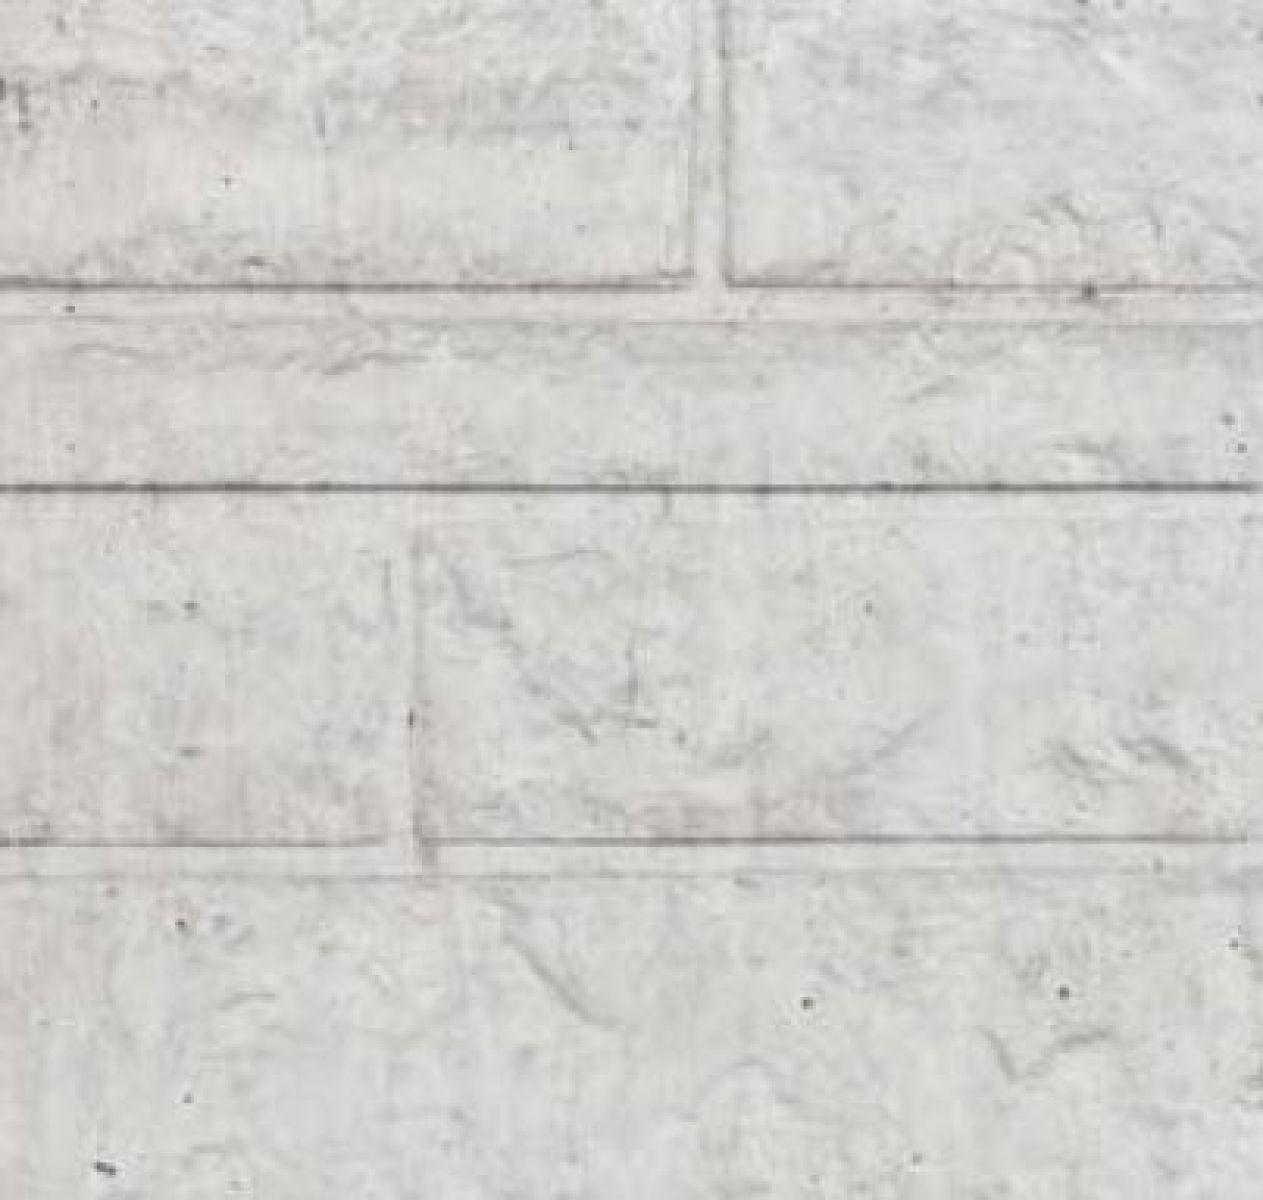 Betonnen onderplaat 2-zijdig rotsmotief wit/grijs 4.8x36x180cm